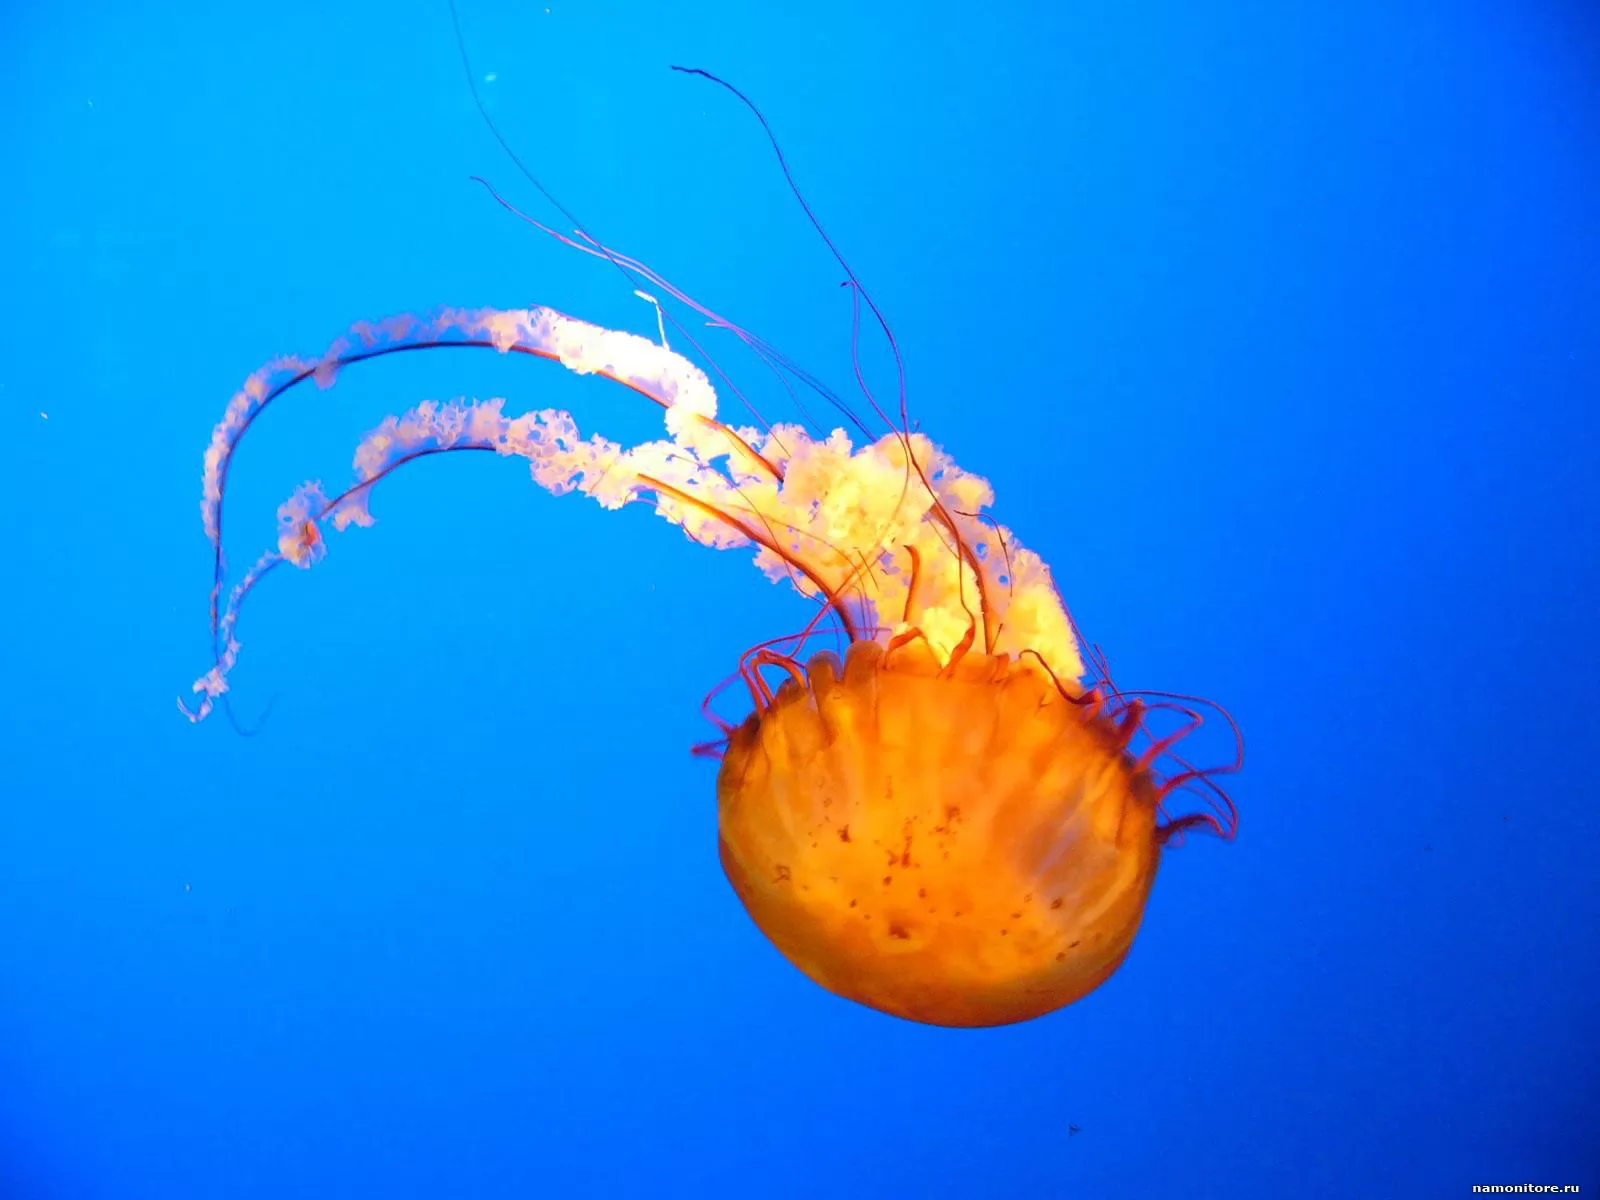 Jellyfish, best, dark blue, golden, jellyfishes, sea x